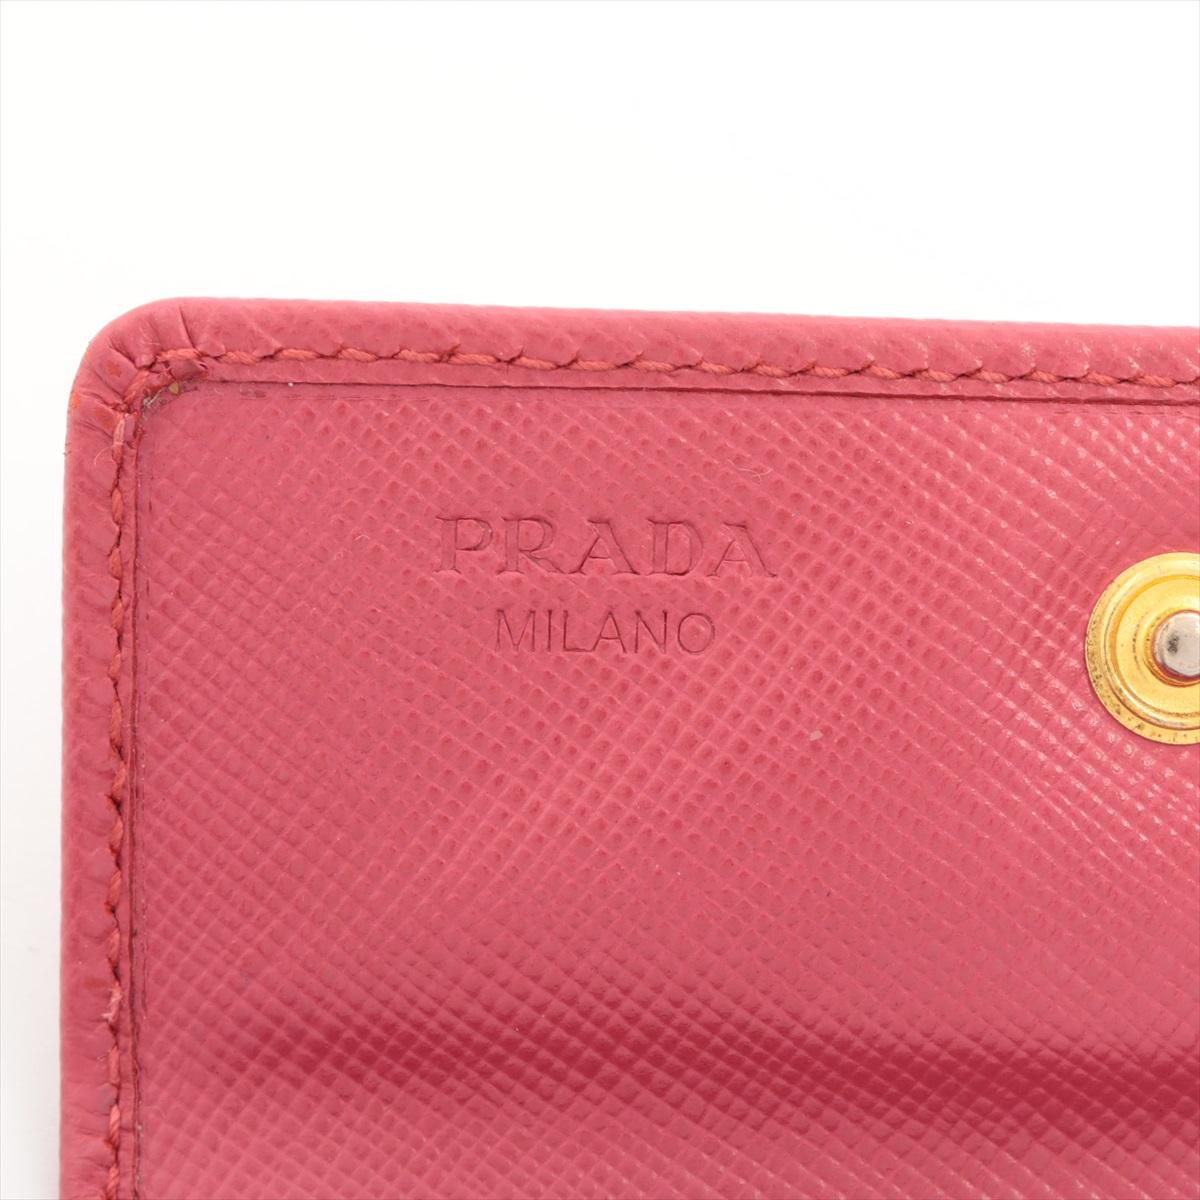 Prada Saffiano Leather Card Case Pink 2